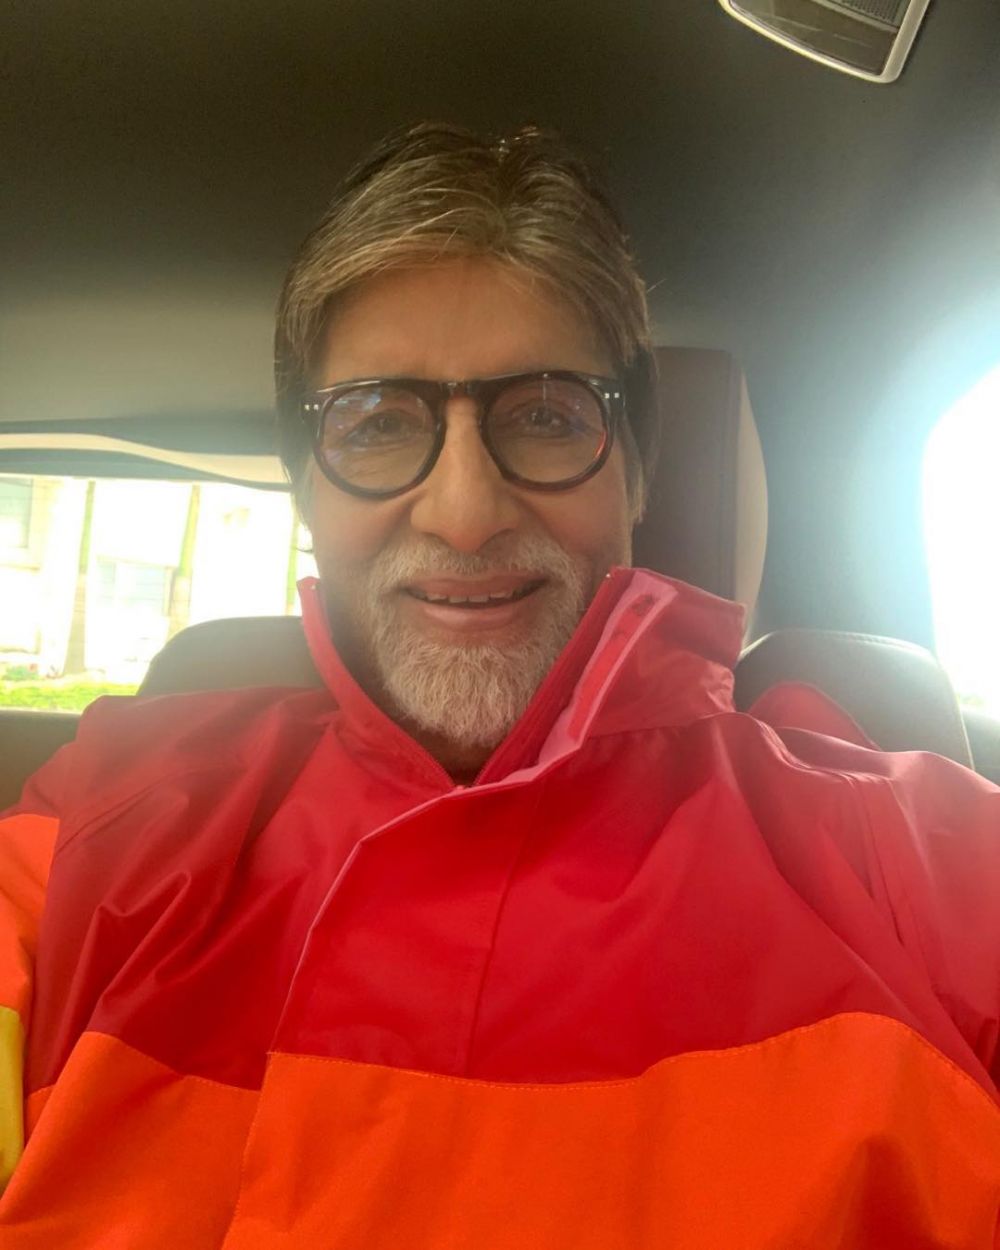 4 Fakta aktor Bollywood Amitabh Bachchan positif Covid-19